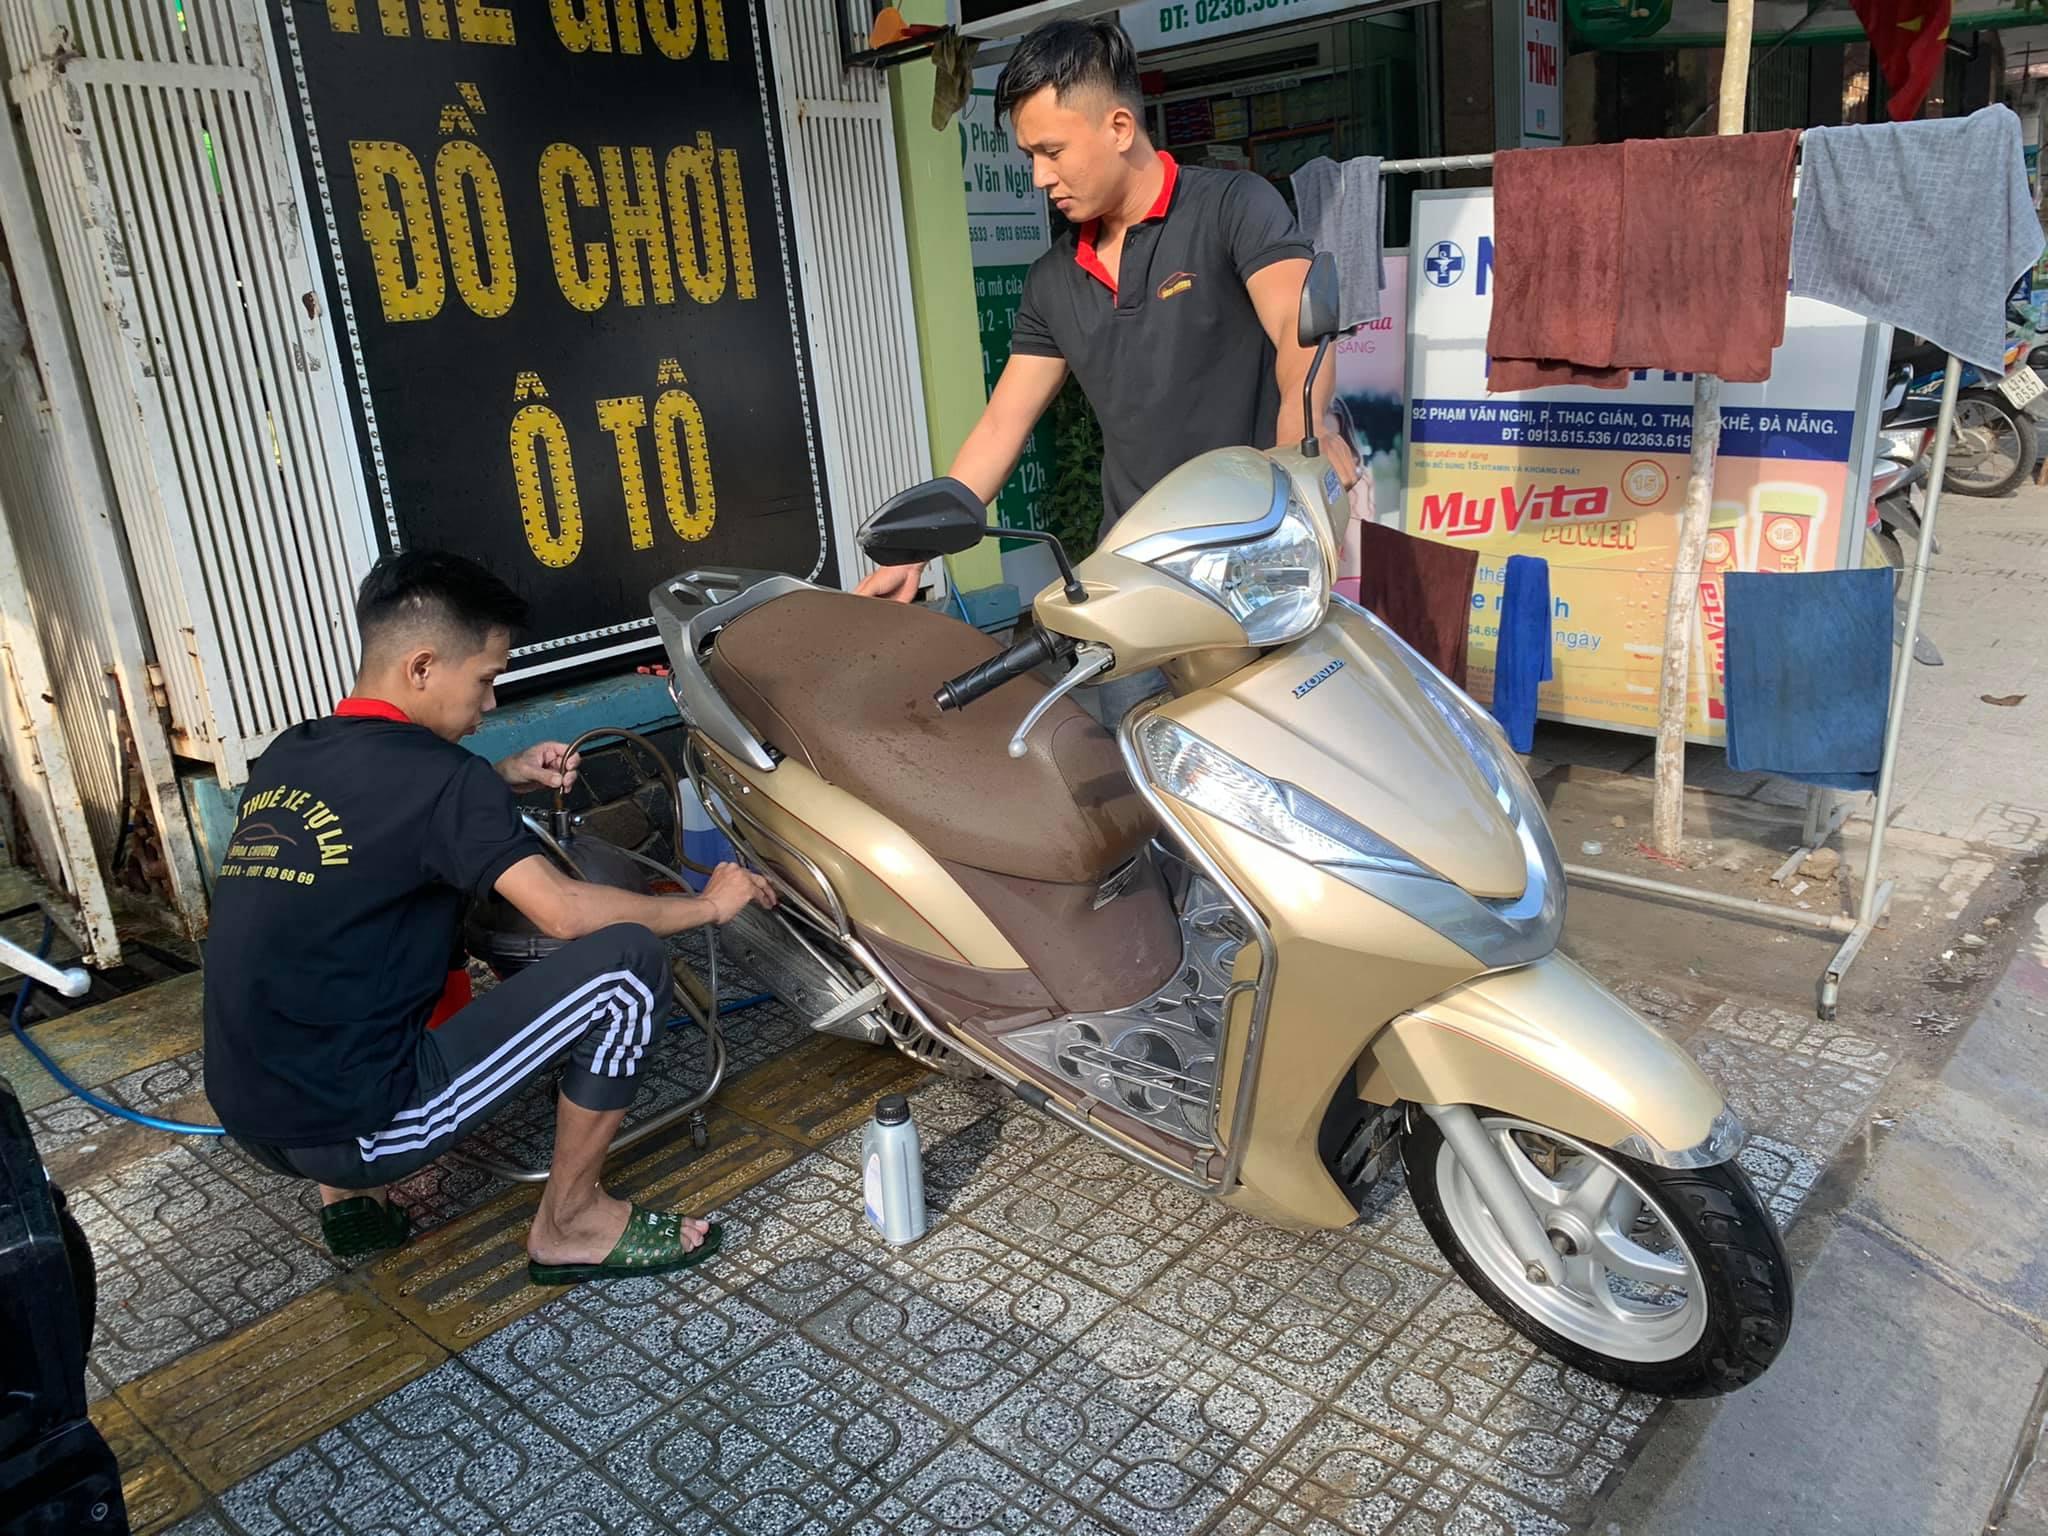 Tiết lộ 7 địa điểm rửa xe máy tại Đà Nẵng chuyên nghiệp nhất